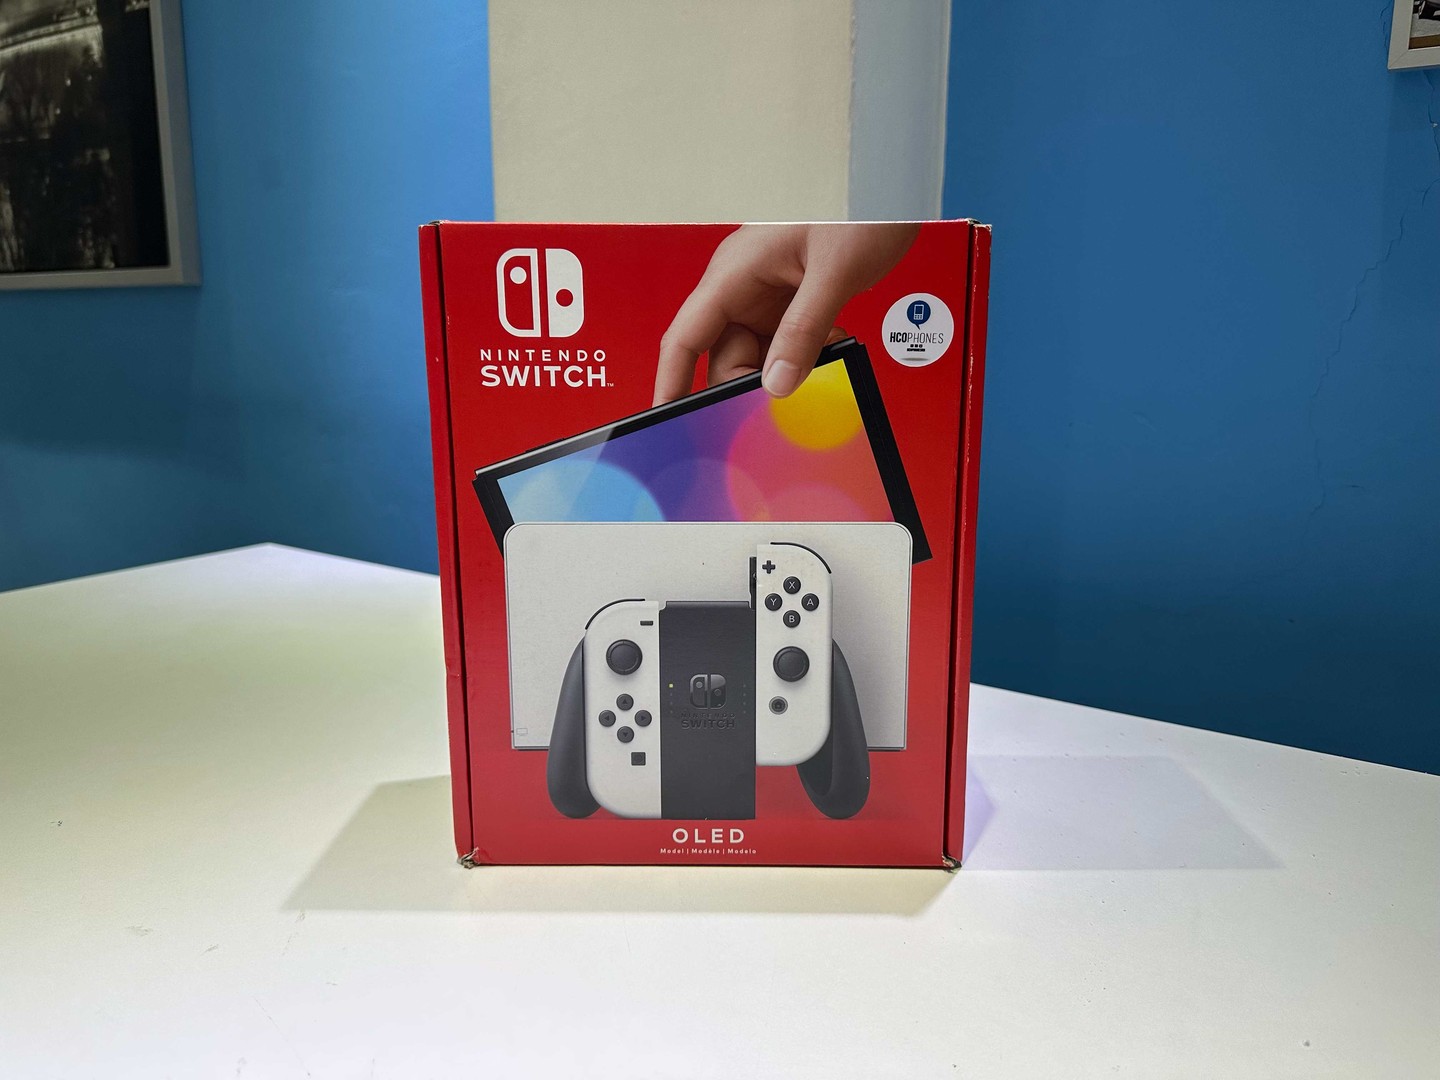 consolas y videojuegos - Nintendo Switch Oled Nuevos Sellados, Originales RD$ 18,500 NEG/ TIENDA 0